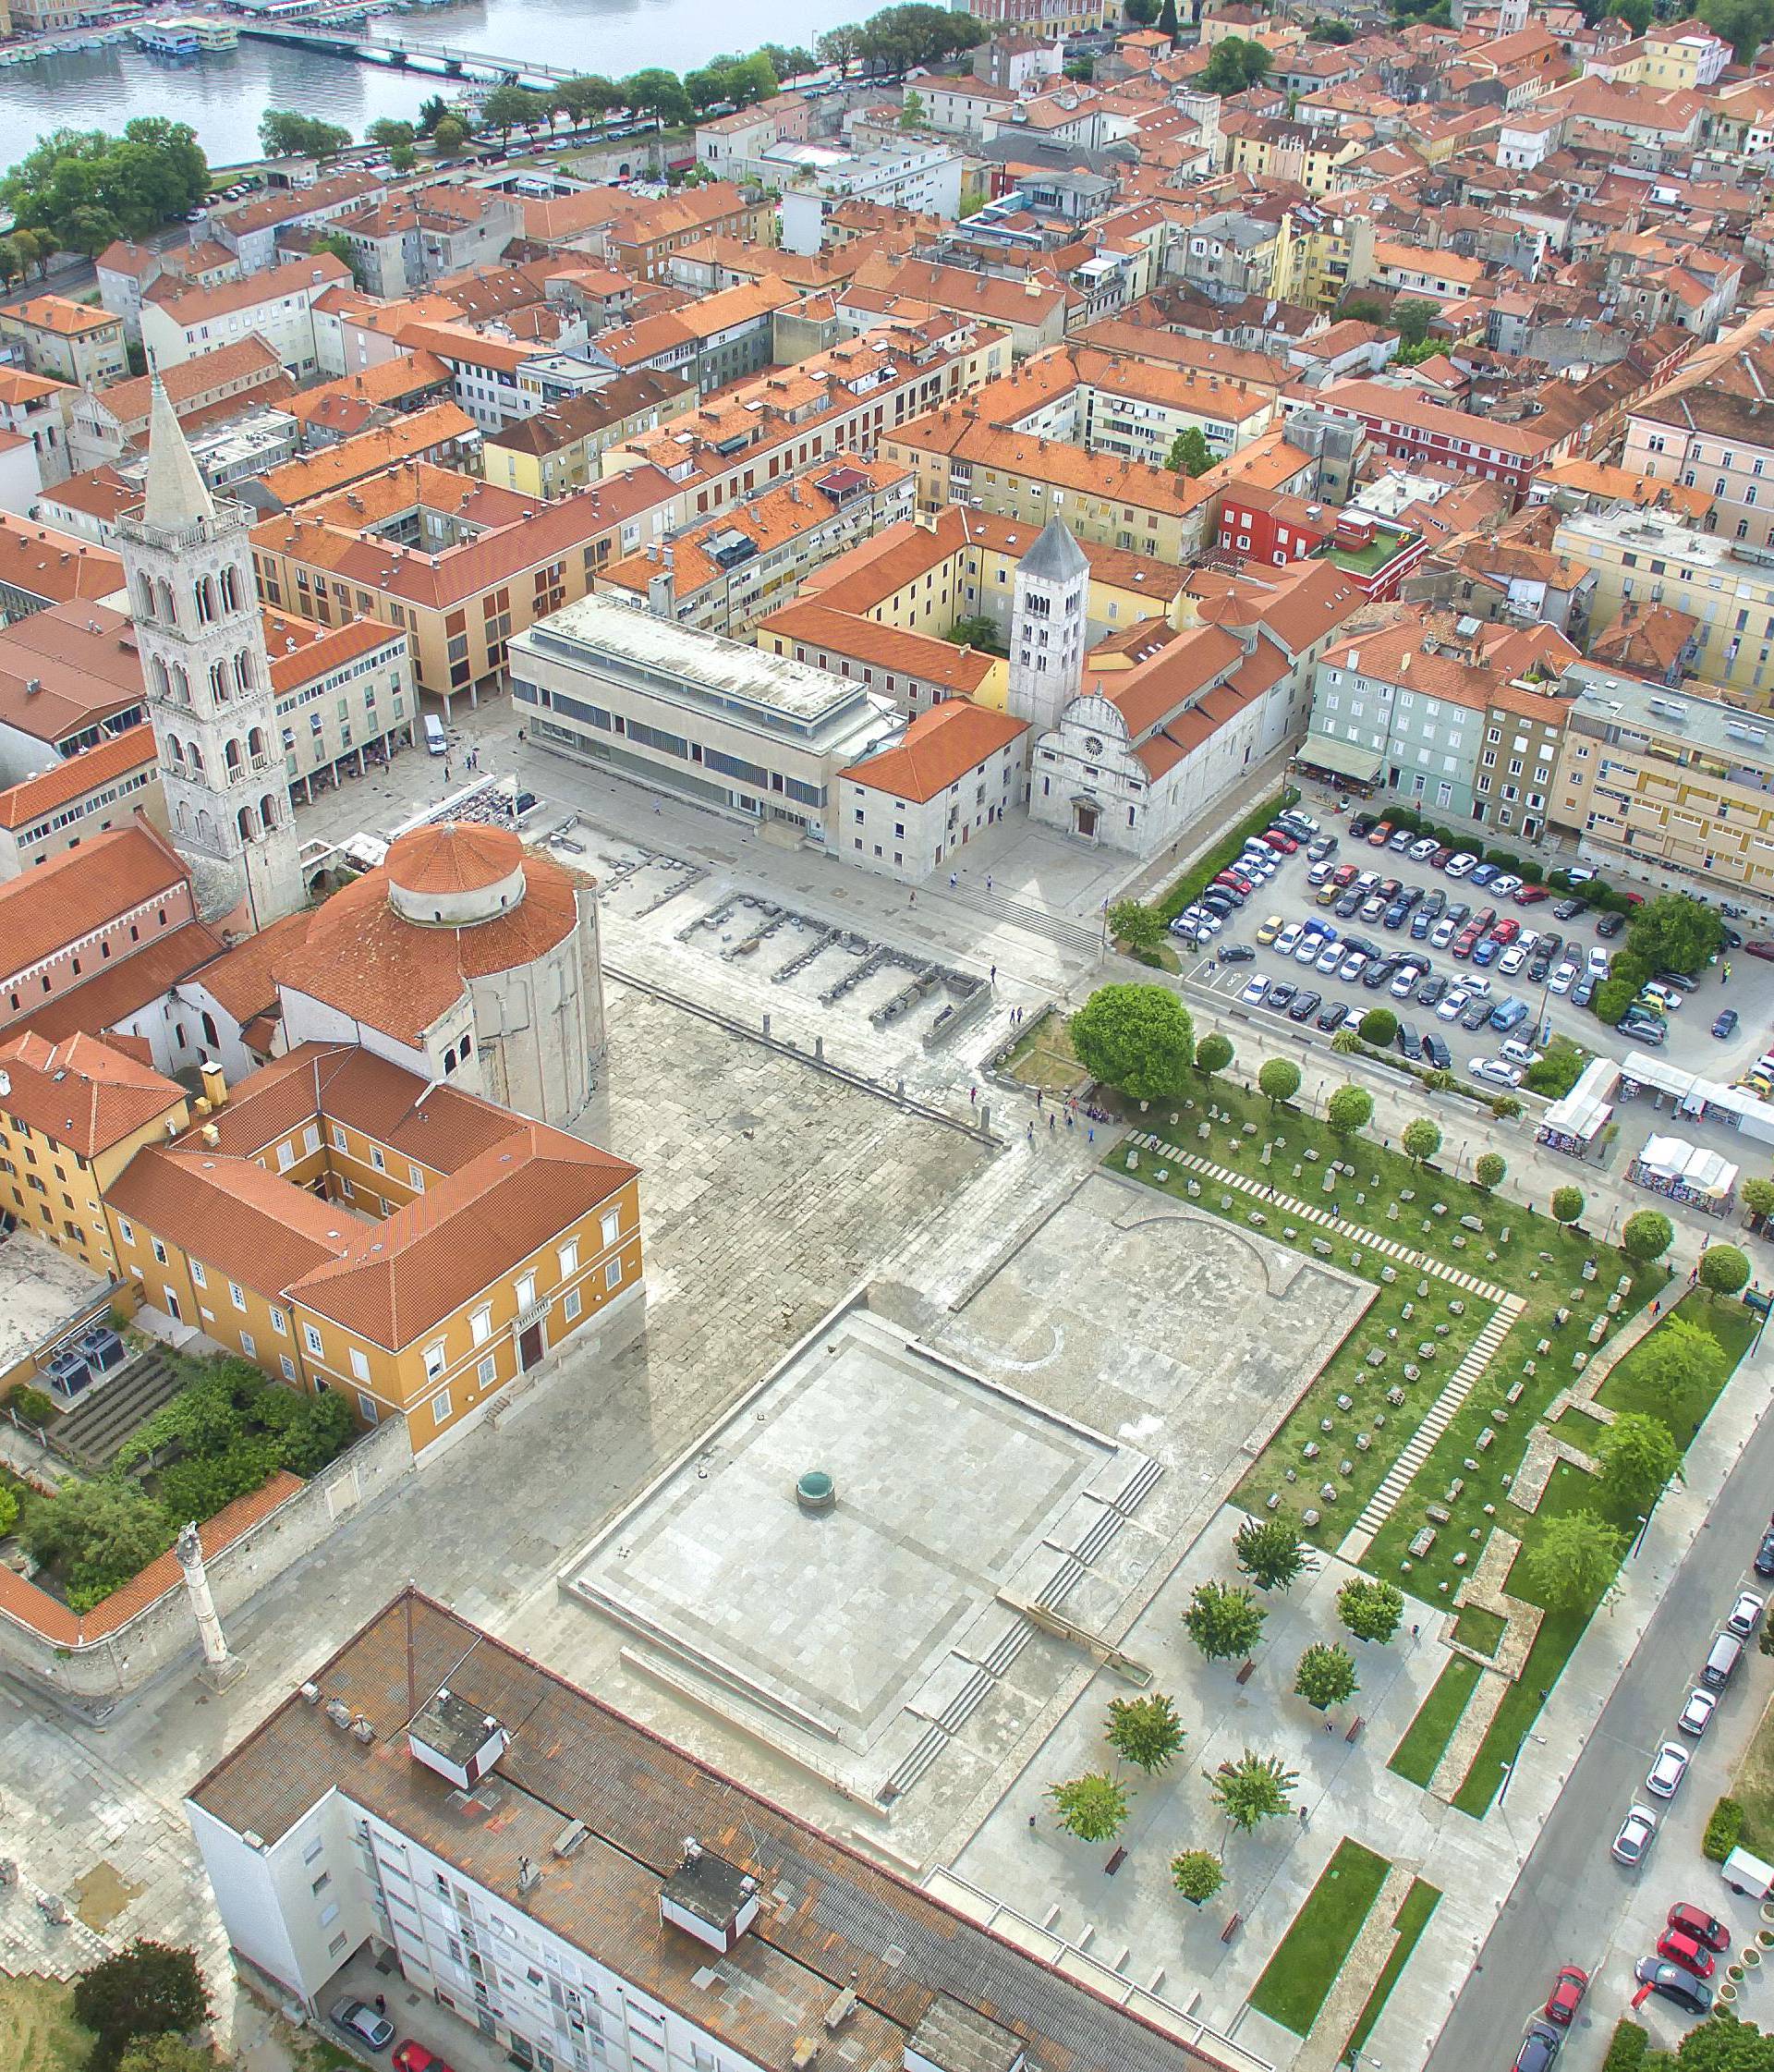 Hrvatske tvrđave i povijesne građevine jedinstvene u svijetu